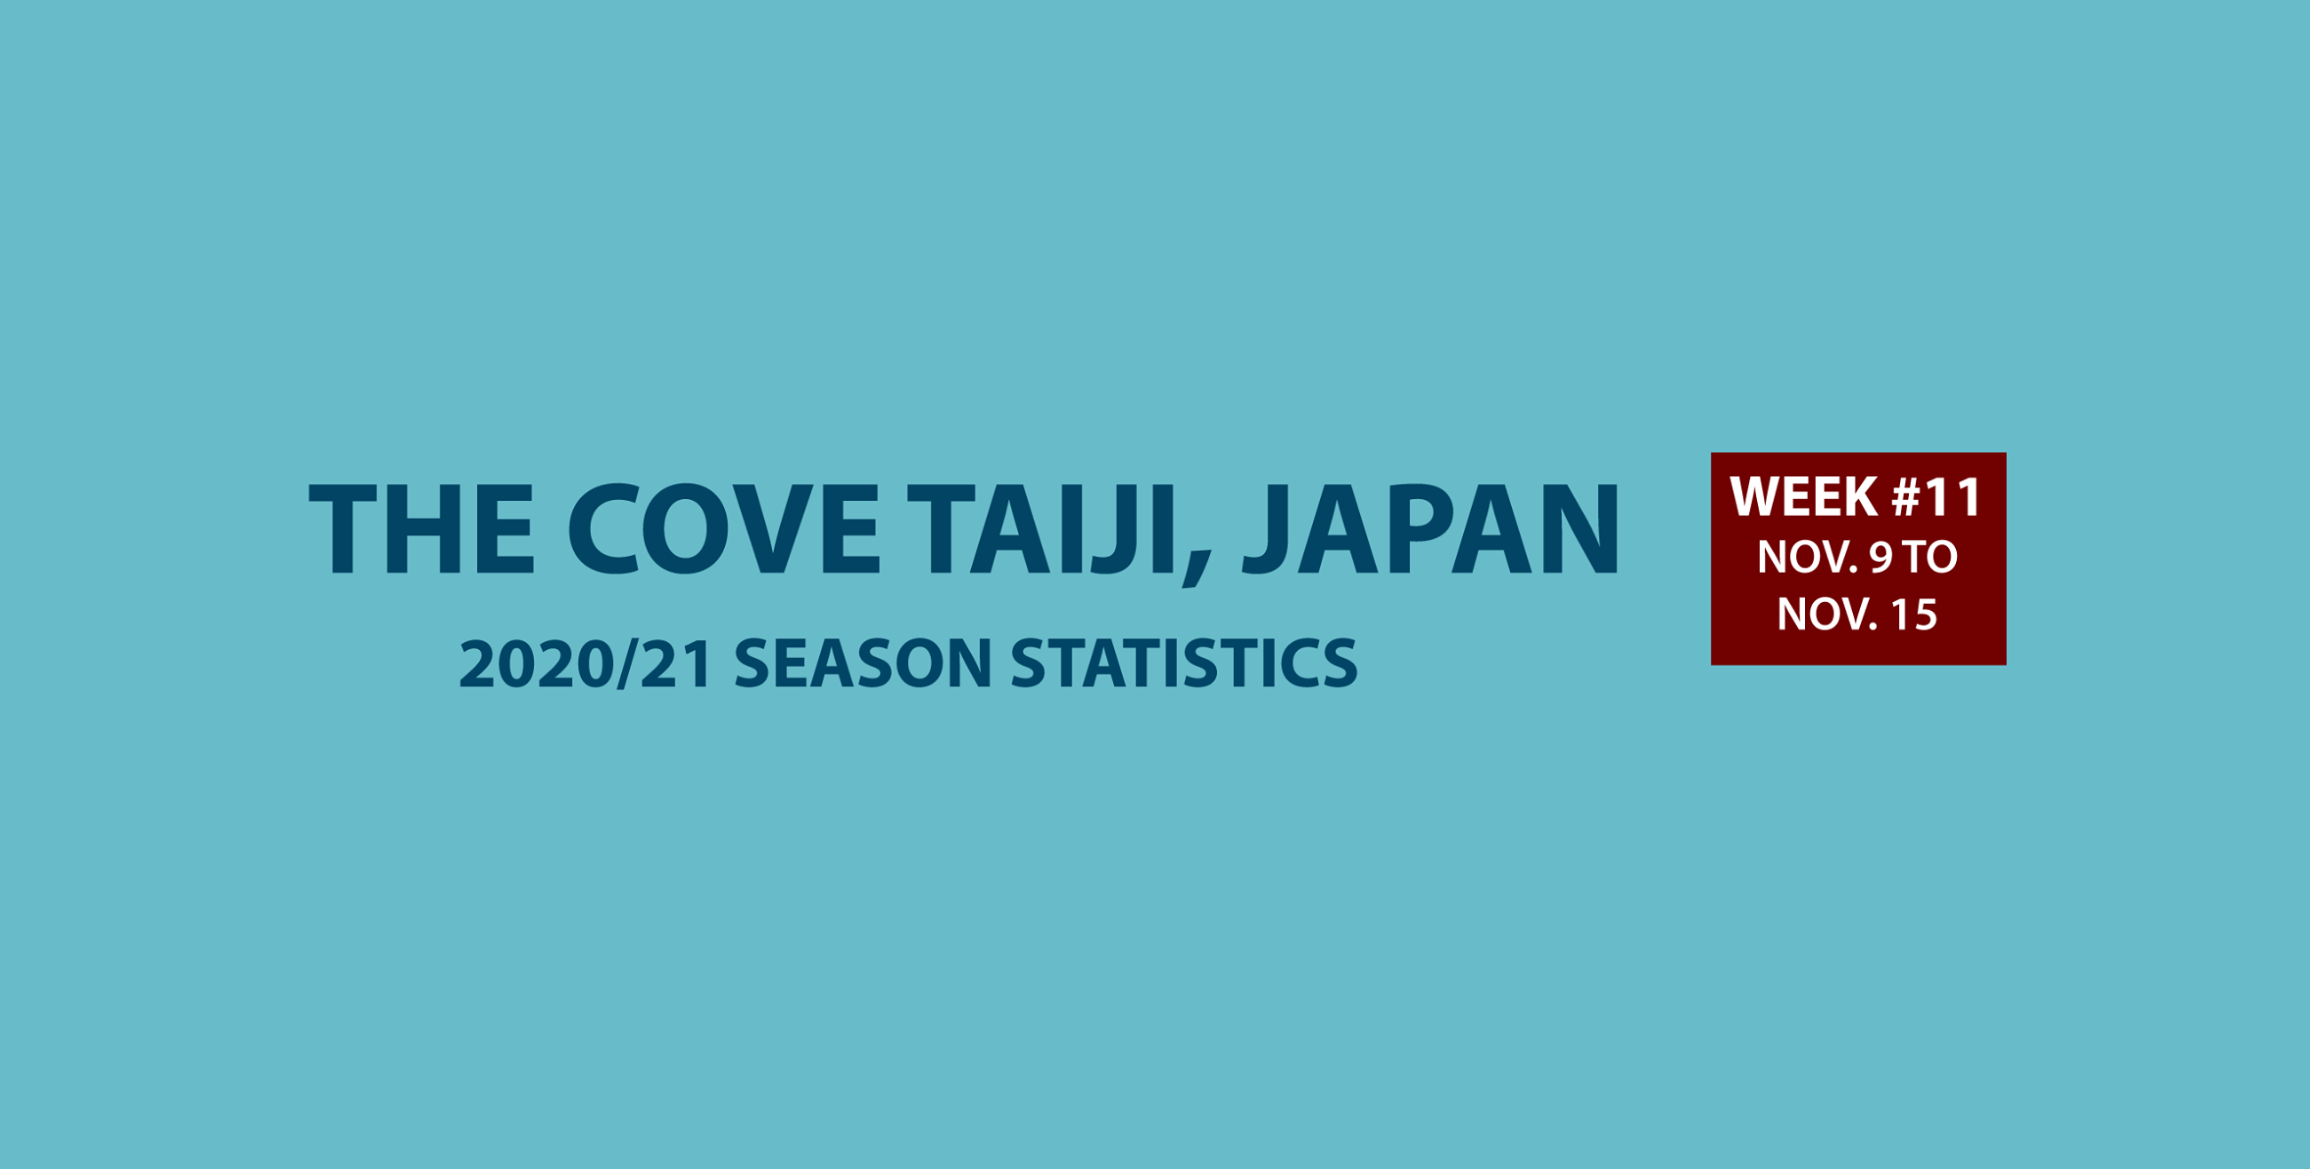 Chasse au dauphin à Taïji (Japon) – Bilan semaine du 09 au 15 novembre 2020 #11